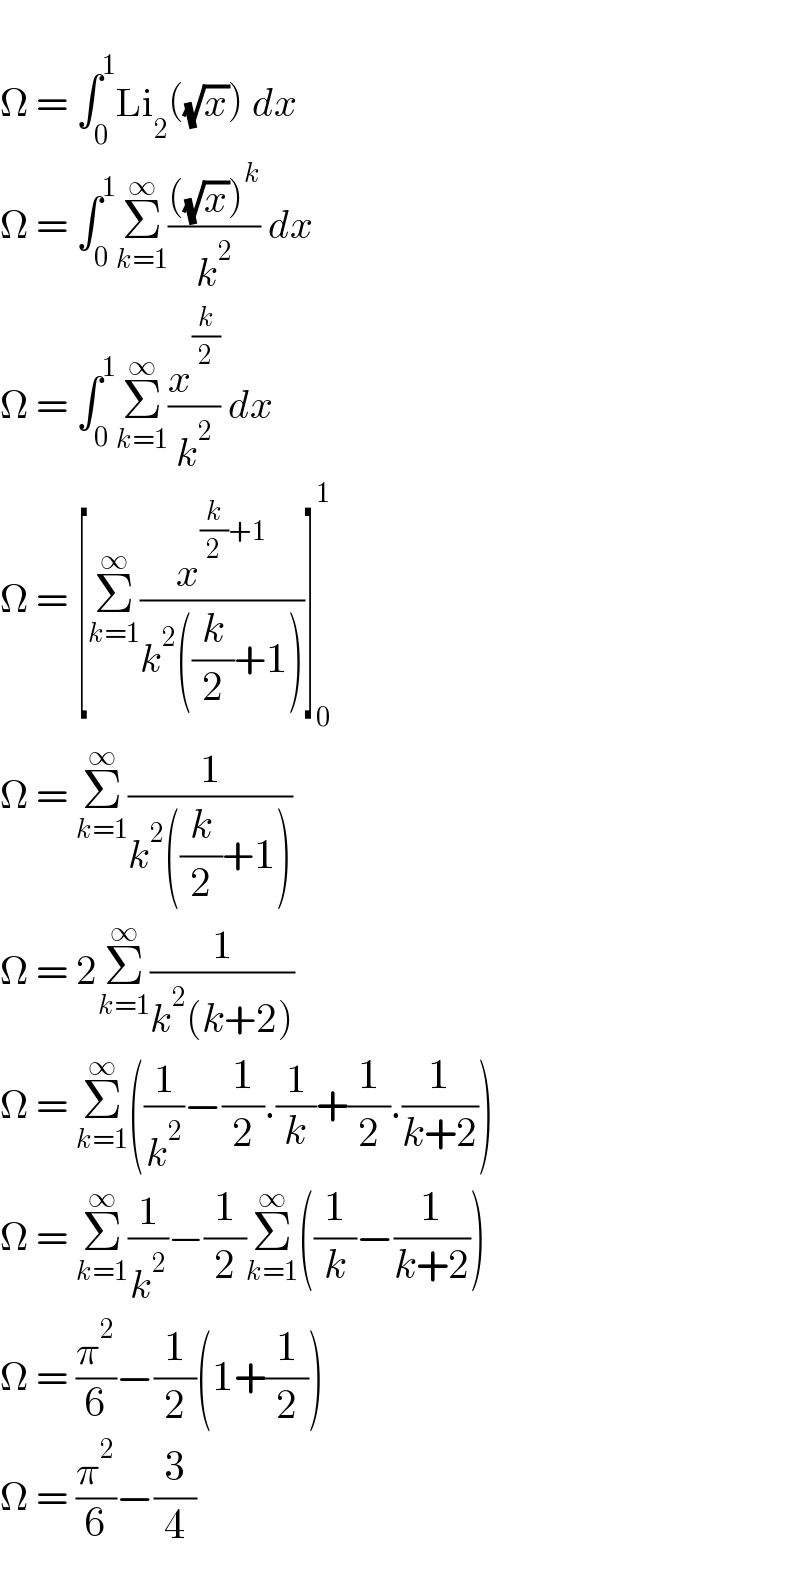   Ω = ∫_0 ^1 Li_2 ((√x)) dx  Ω = ∫_0 ^1 Σ_(k=1) ^∞ ((((√x))^k )/k^2 ) dx  Ω = ∫_0 ^1 Σ_(k=1) ^∞ (x^(k/2) /k^2 ) dx  Ω = [Σ_(k=1) ^∞ (x^((k/2)+1) /(k^2 ((k/2)+1)))]_0 ^1   Ω = Σ_(k=1) ^∞ (1/(k^2 ((k/2)+1)))  Ω = 2Σ_(k=1) ^∞ (1/(k^2 (k+2)))  Ω = Σ_(k=1) ^∞ ((1/k^2 )−(1/2).(1/k)+(1/2).(1/(k+2)))  Ω = Σ_(k=1) ^∞ (1/k^2 )−(1/2)Σ_(k=1) ^∞ ((1/k)−(1/(k+2)))  Ω = (π^2 /6)−(1/2)(1+(1/2))  Ω = (π^2 /6)−(3/4)  